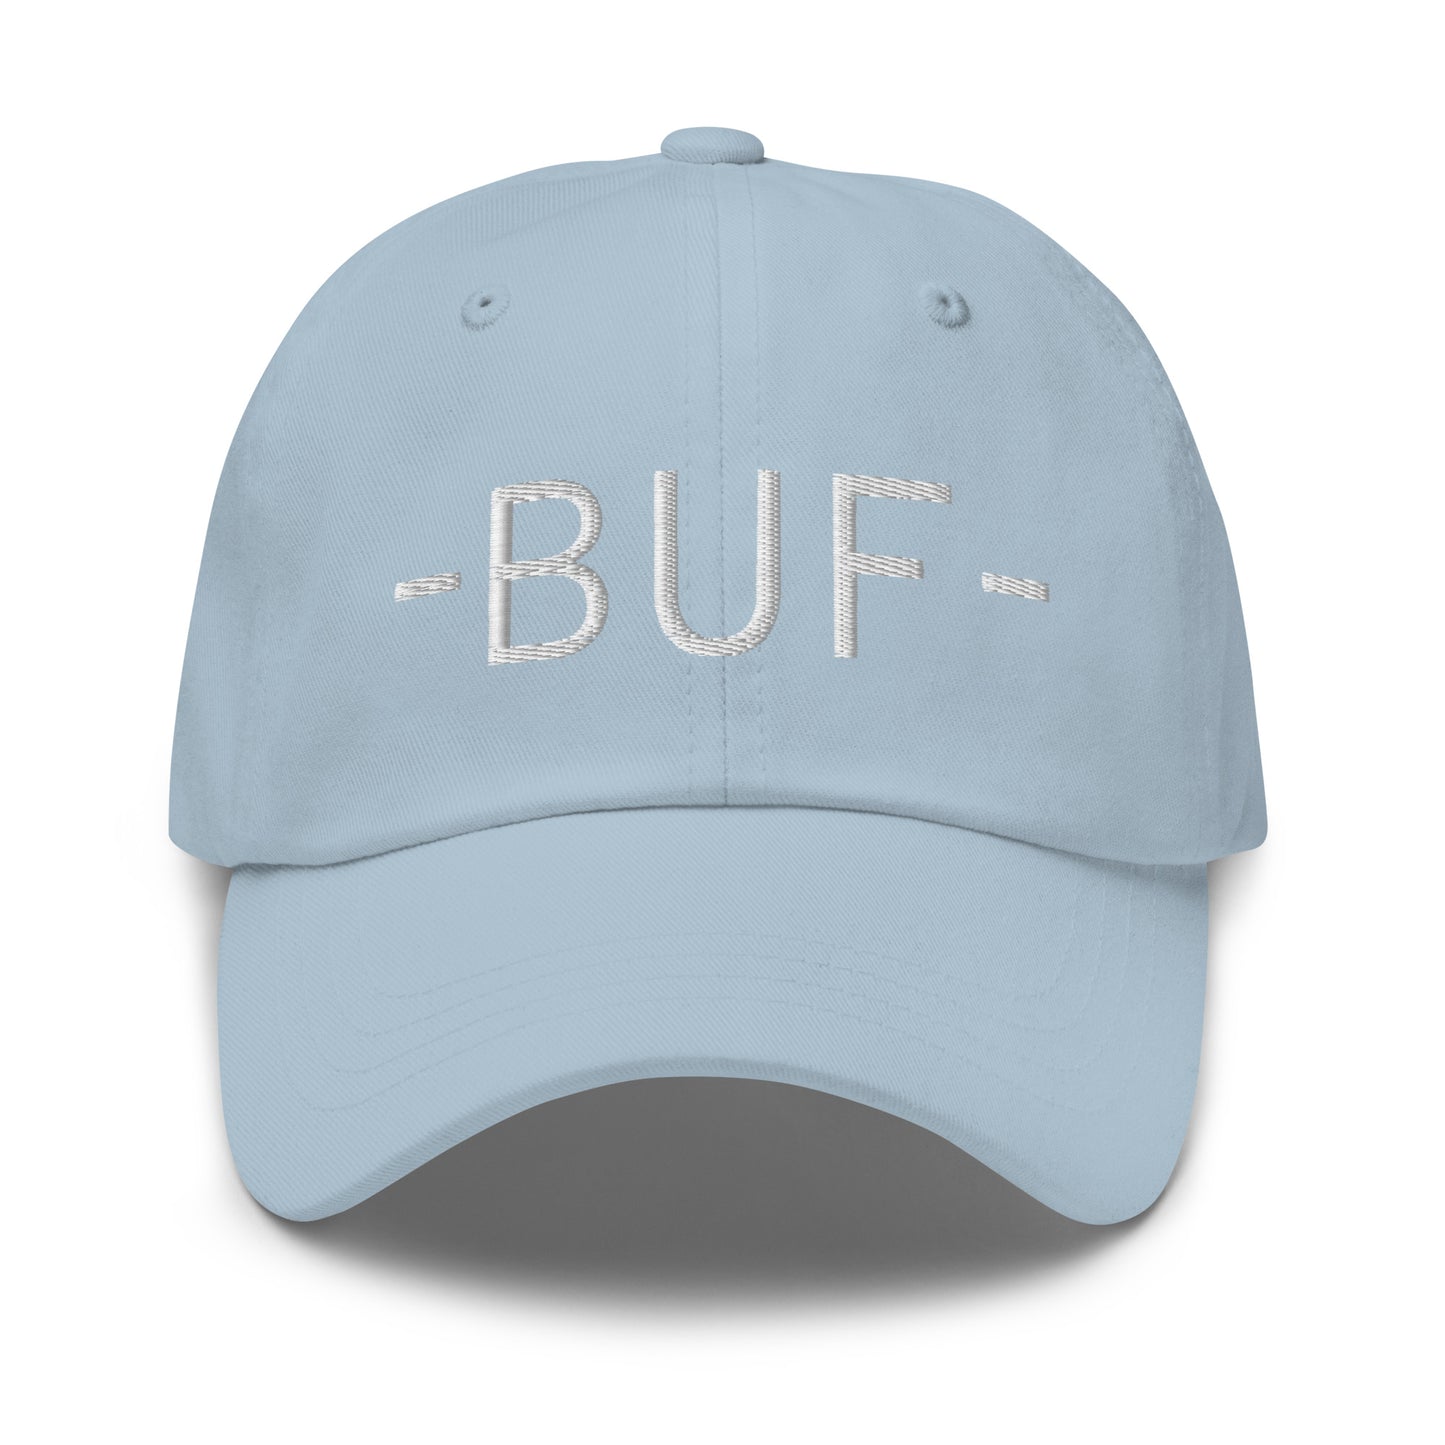 Souvenir Baseball Cap - White • BUF Buffalo • YHM Designs - Image 27